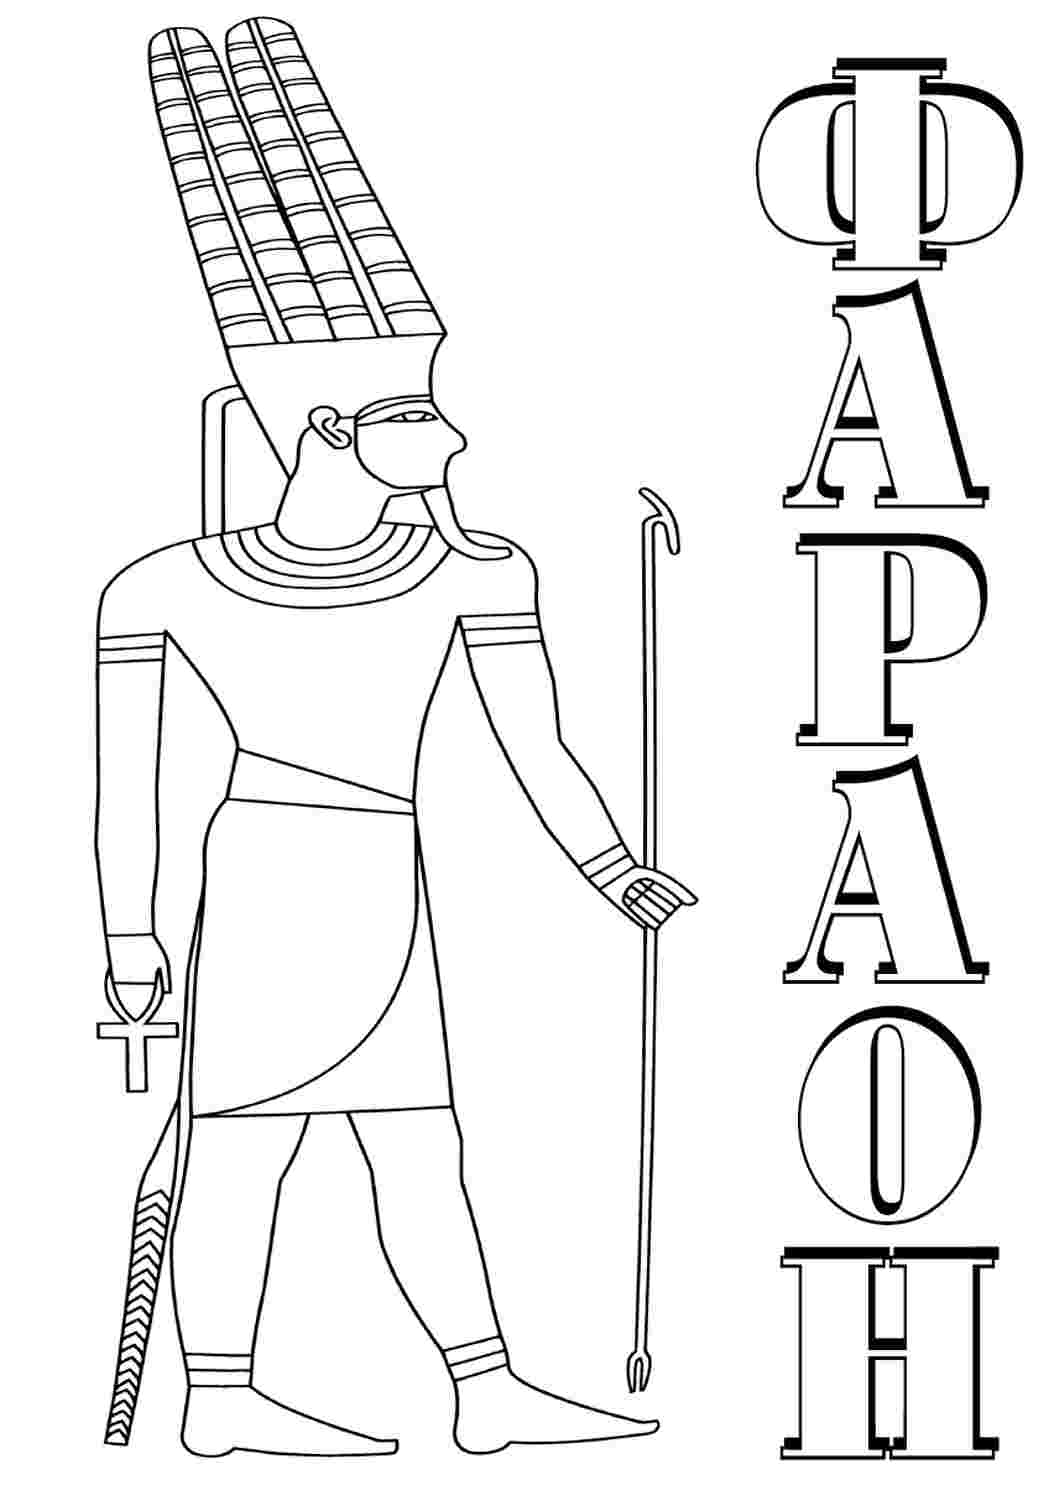 Фараон на букву т. Рисунок карандашом фараон правитель Египта. Египет. Раскраска. Фараон раскраска. Раскраска фараона древнего Египта.